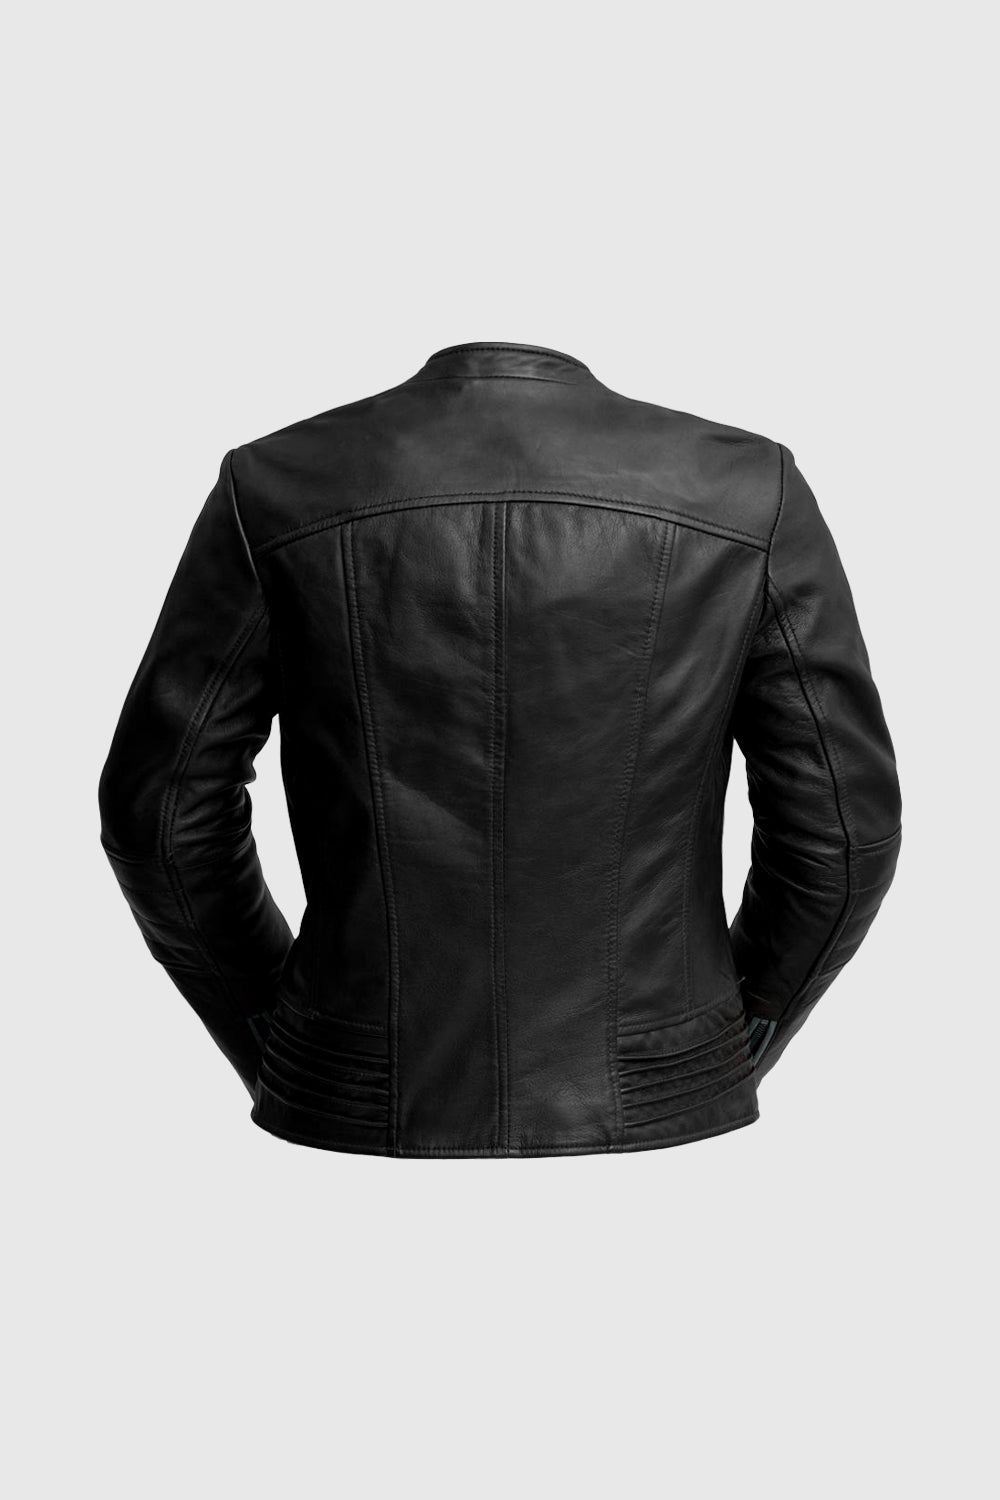 Trish Womens Leather Jacket Black